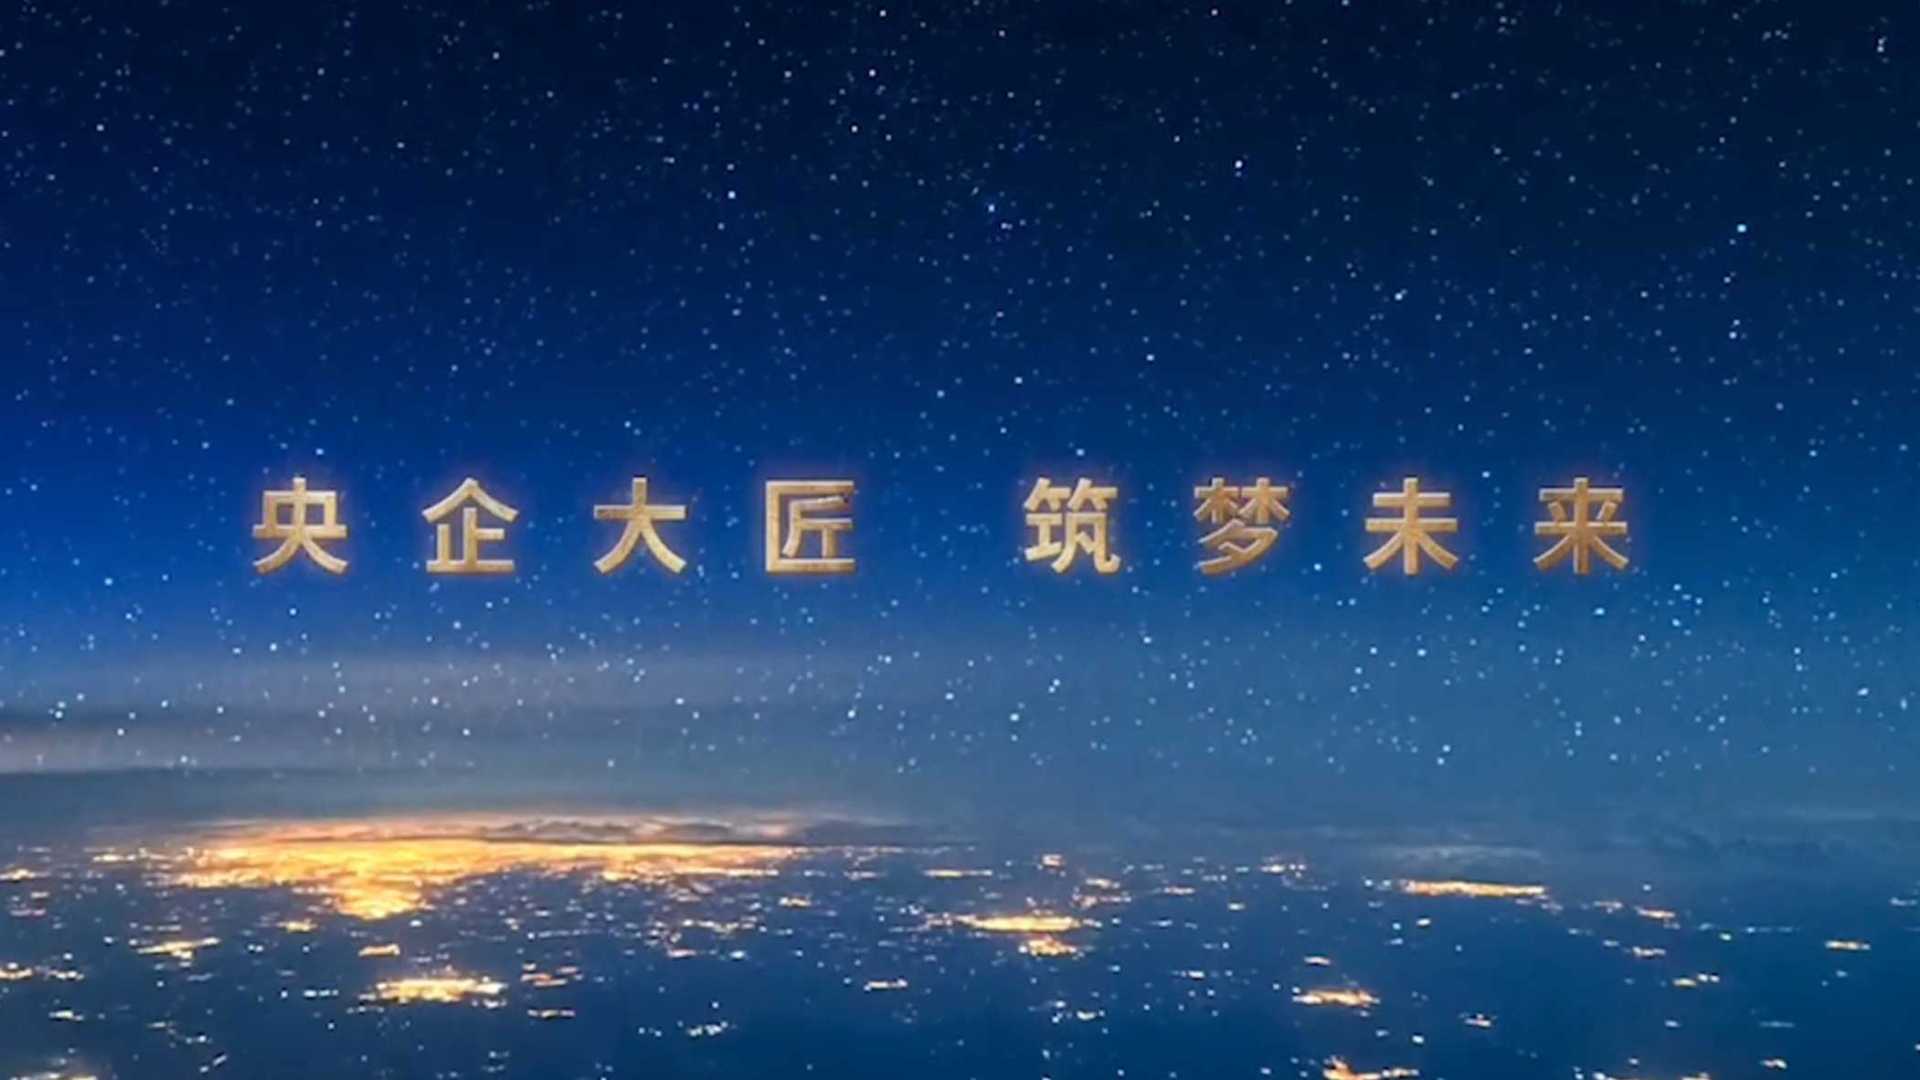 中建三局宣传片《央企大匠 筑梦未来》